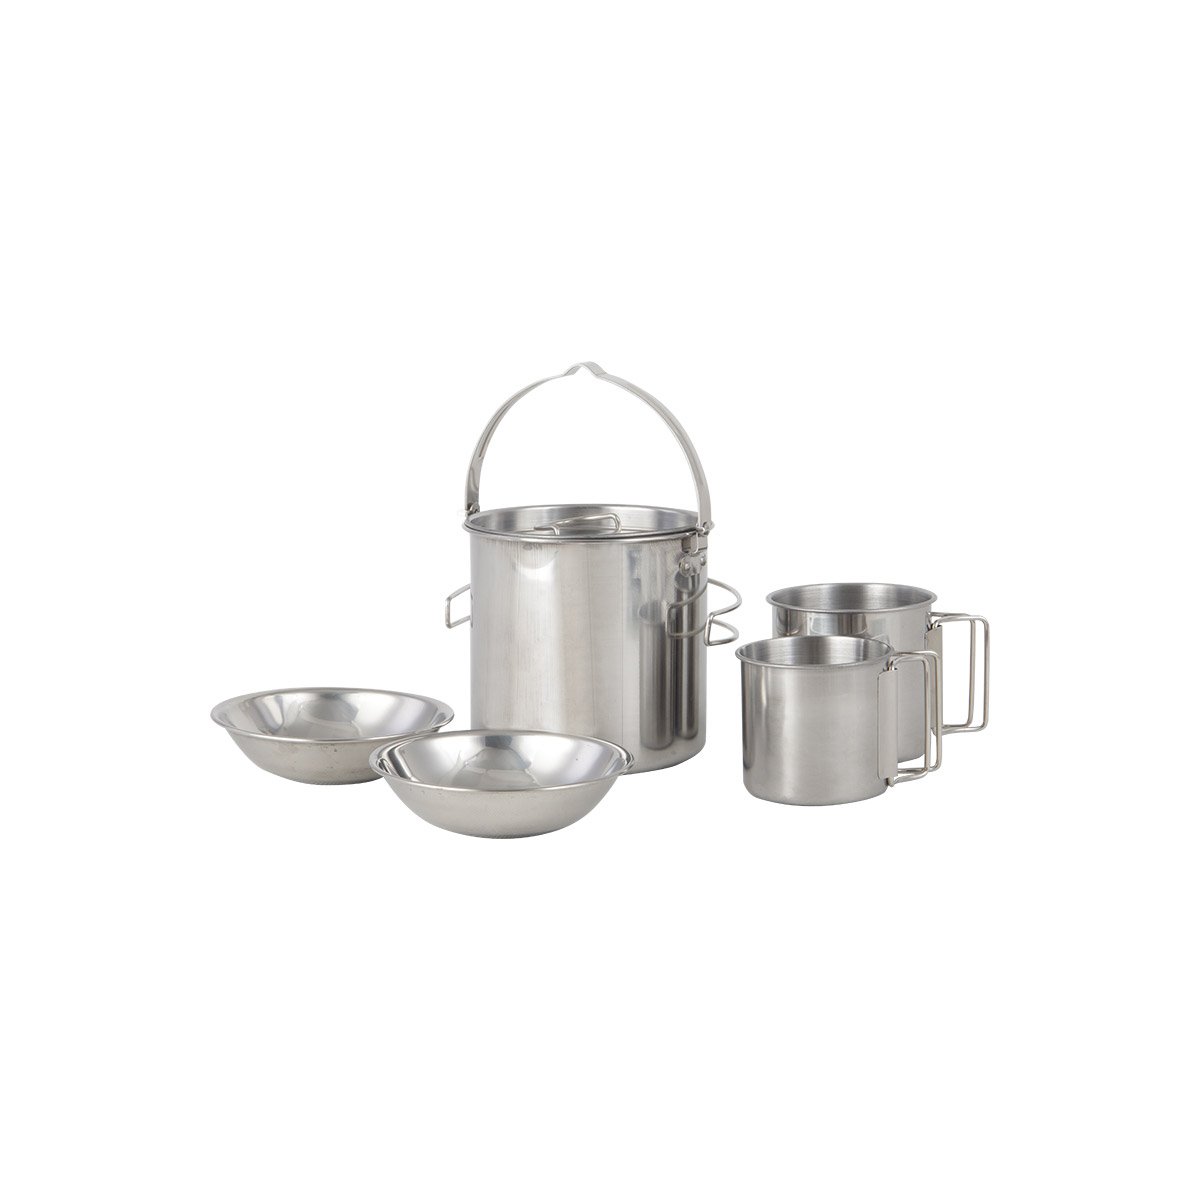 Набор посуды походный Camp-S13 из нержавеющей стали (5 предметов) (106942)Купить